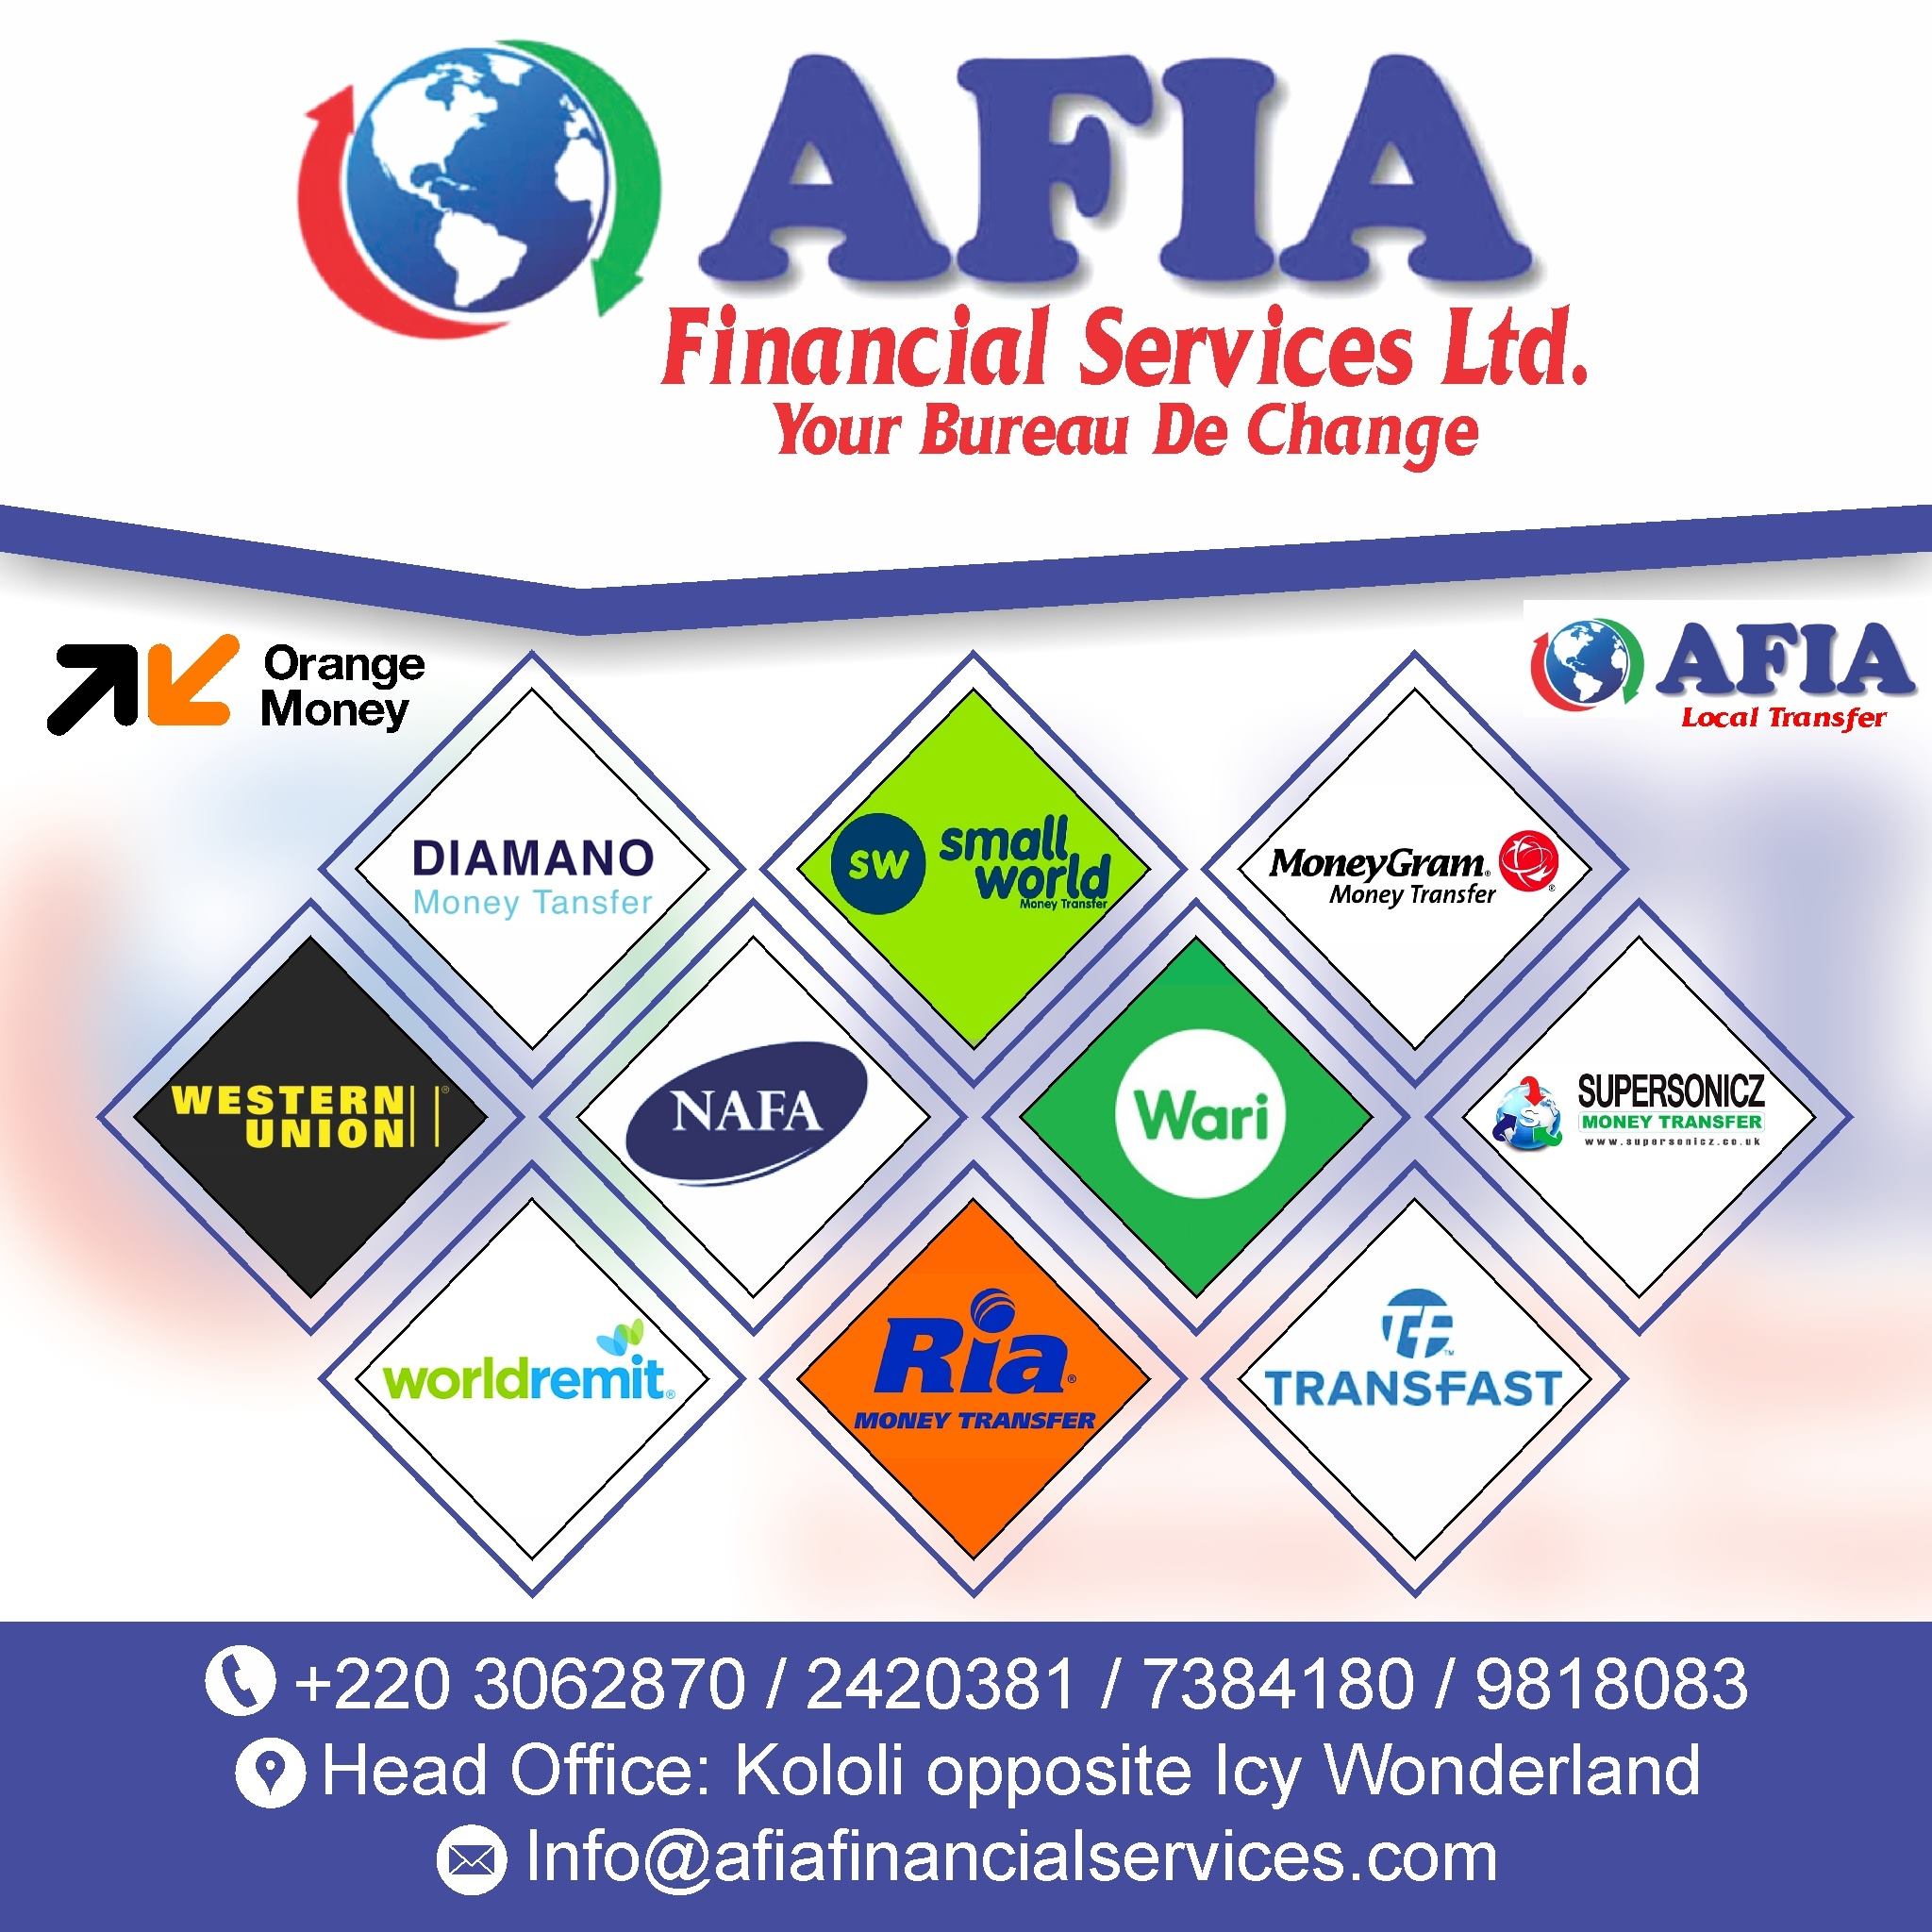 Afia Financial Services and Bureau De Change